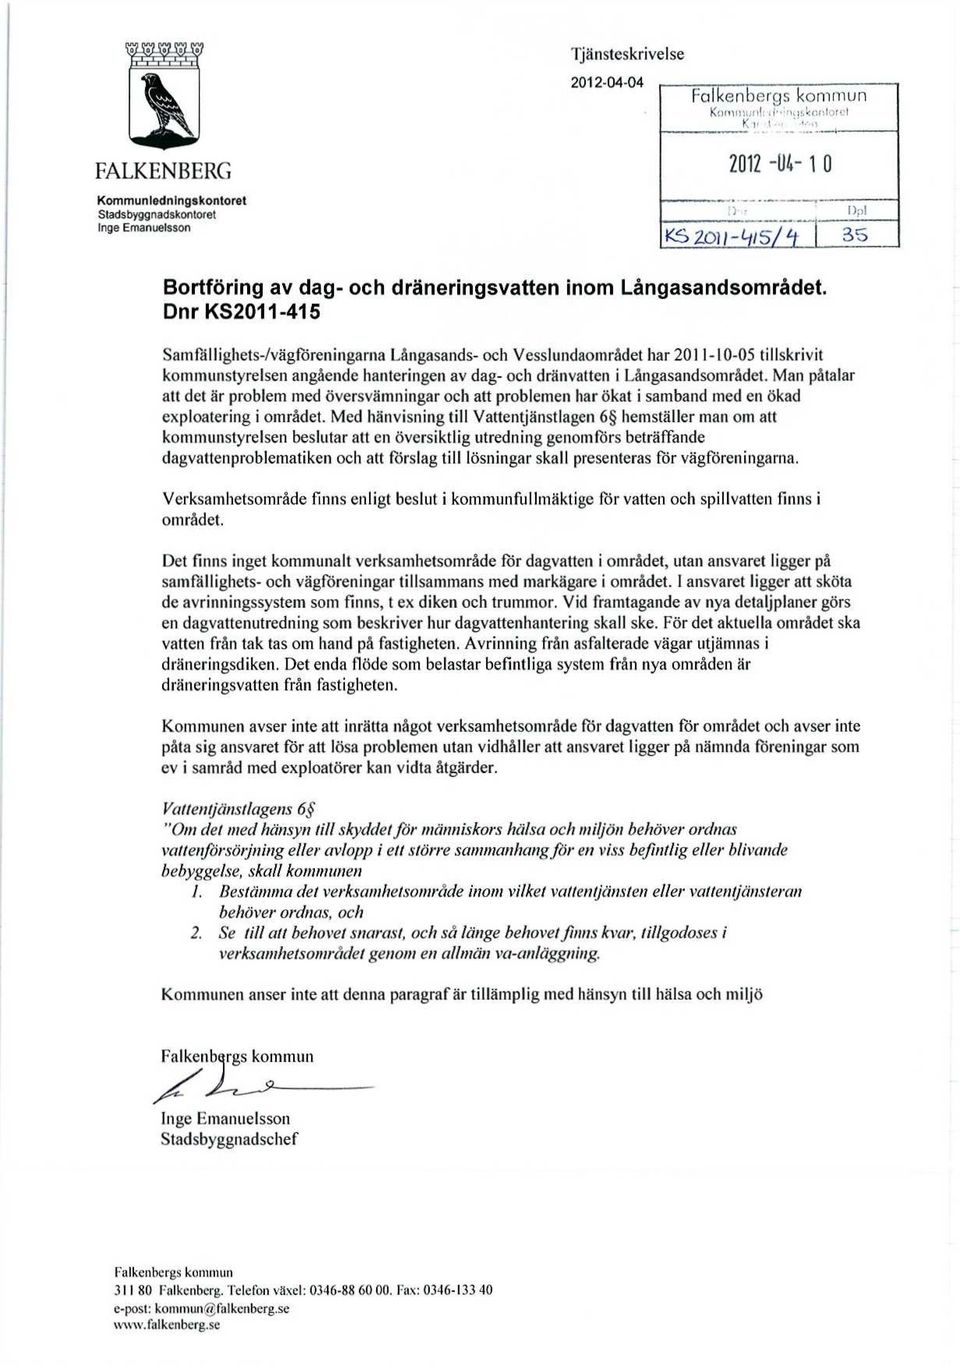 Dnr KS2011-415 Samfällighets-/vägföreningarna Långasands- och Vesslundaområdet har 2011-10-05 tillskrivit kommunstyrelsen angående hanteringen av dag- och dränvatten i Långasandsområdet.